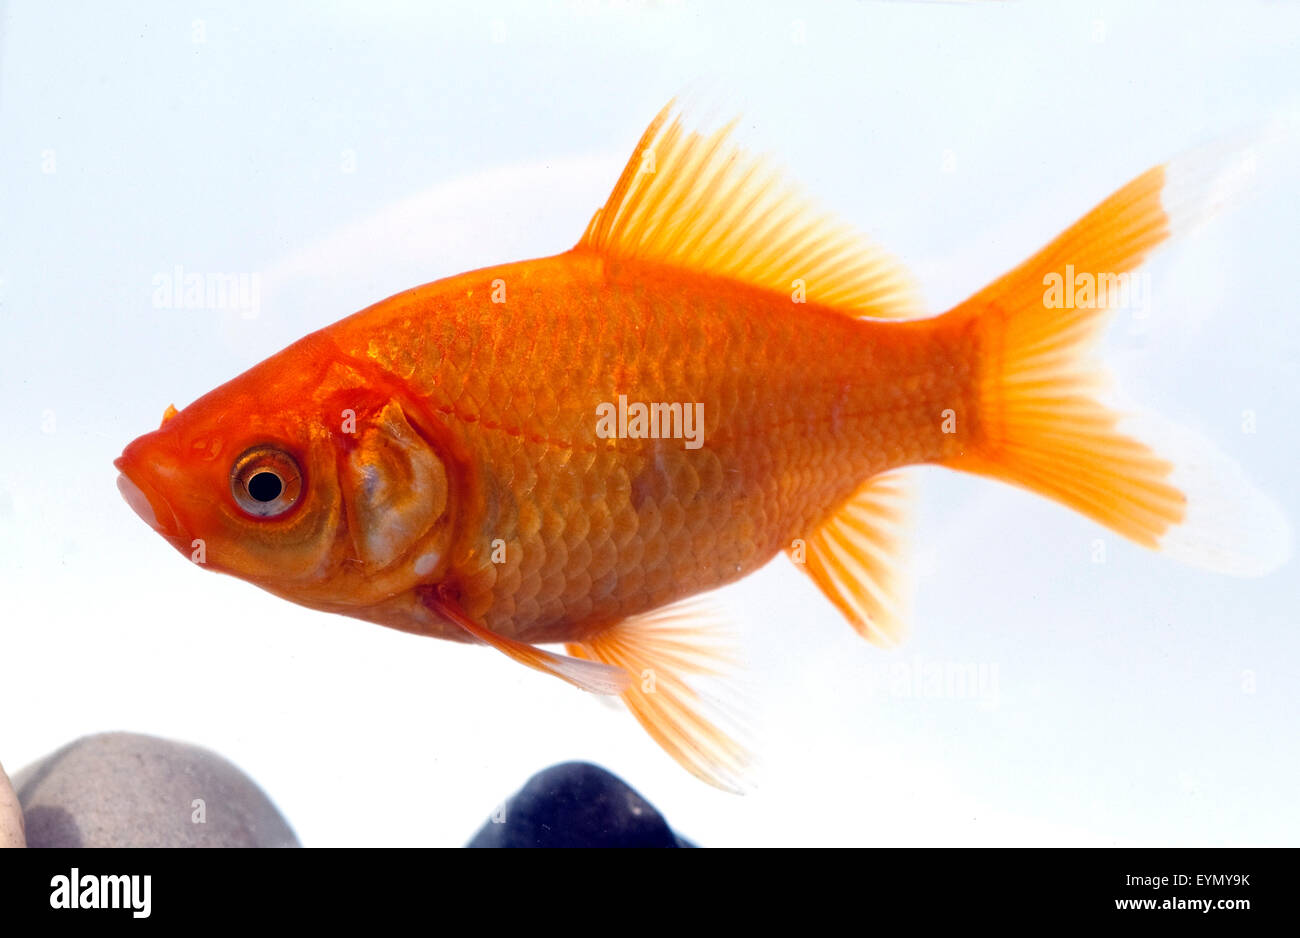 Goldfisch, Carassius auratus, auratus, Karpfenfisch, Stock Photo